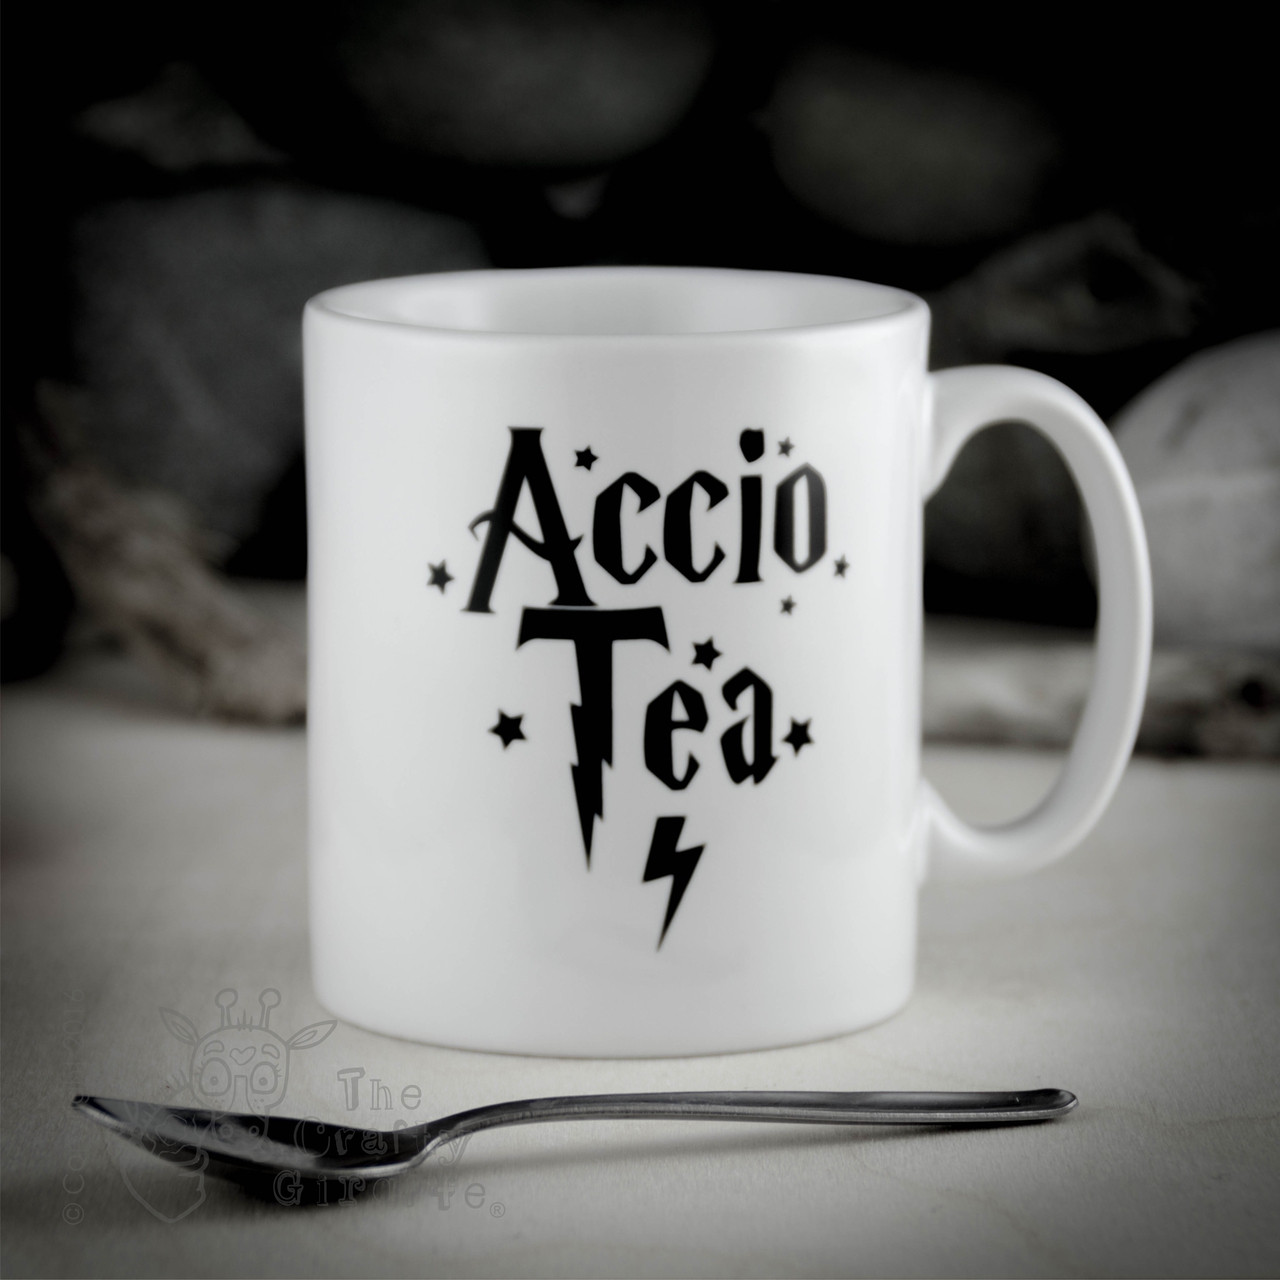 Accio Tea Mug